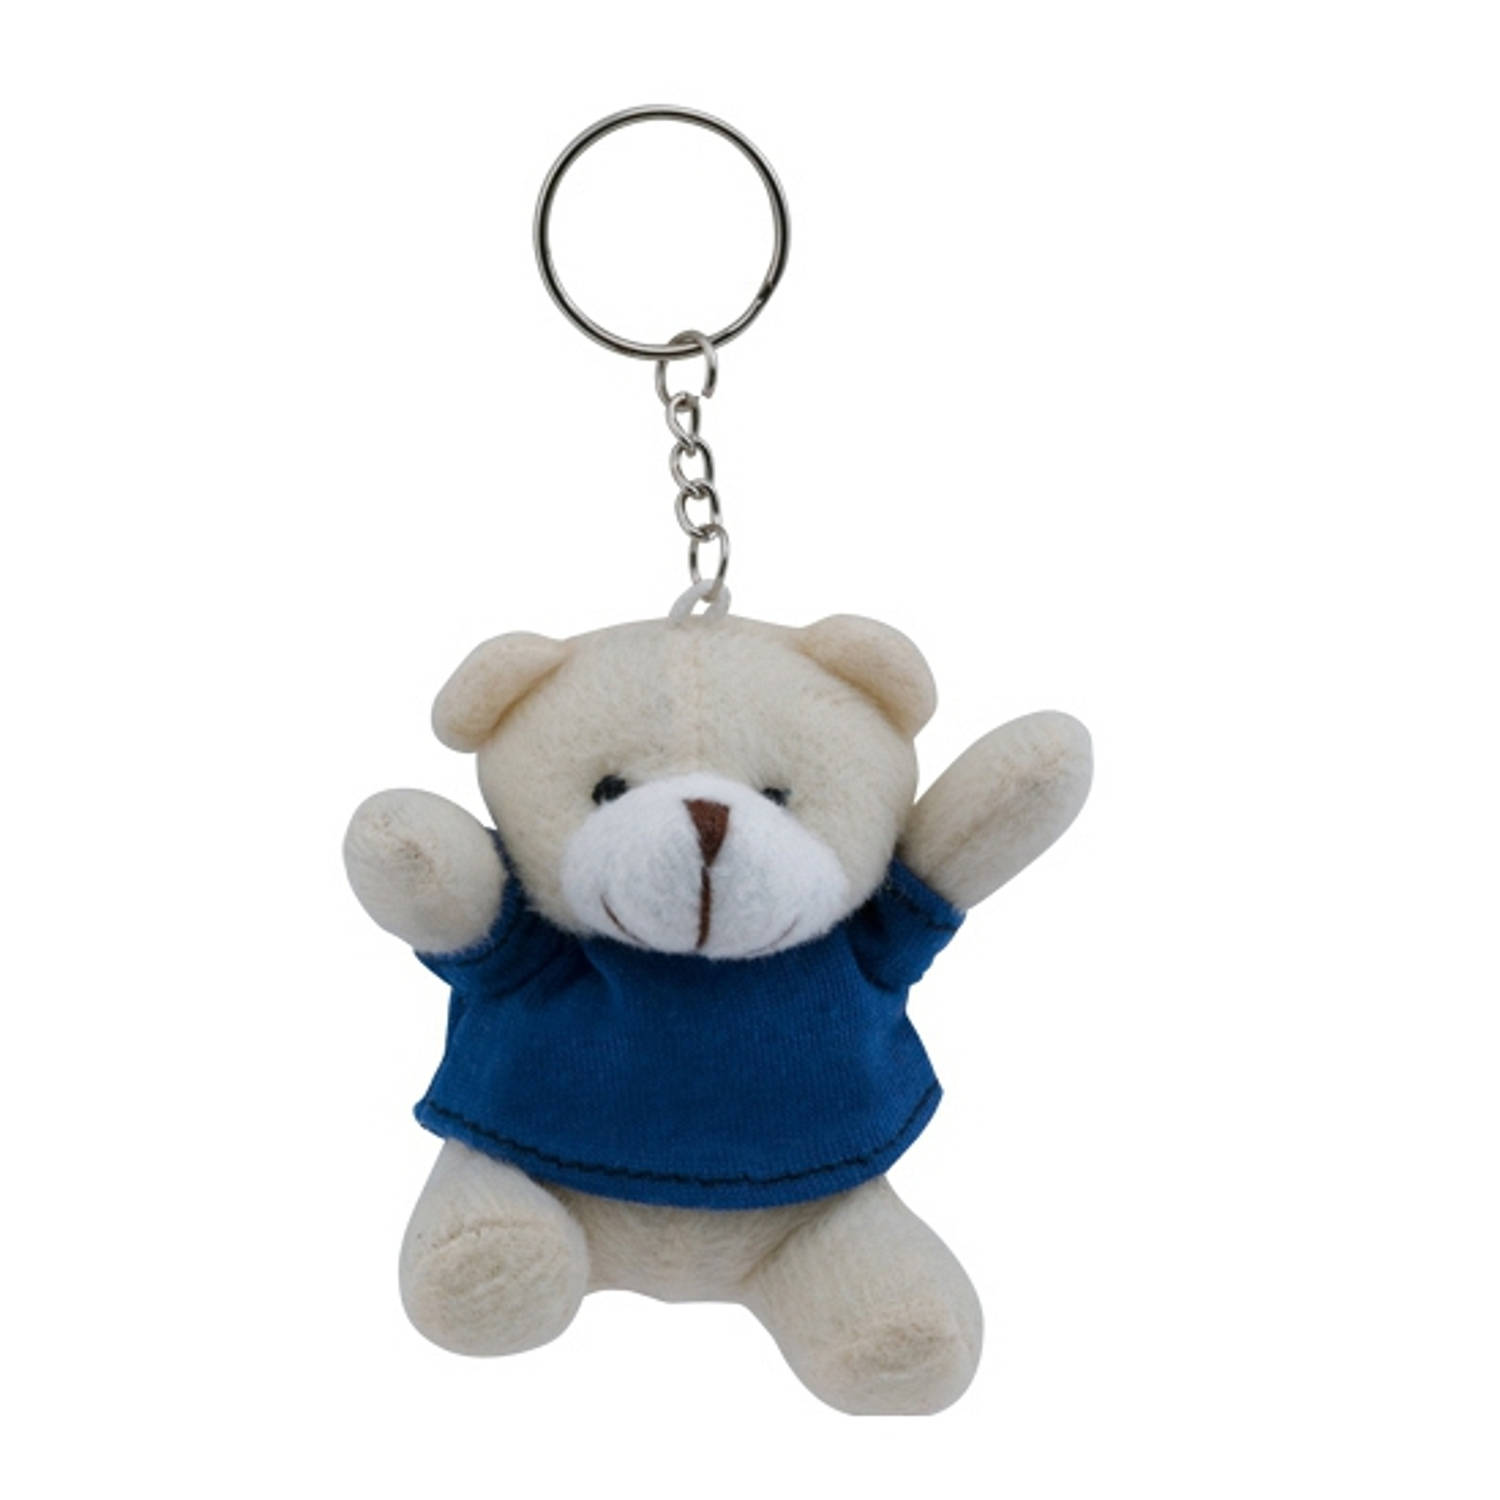 Pluche Teddybeer Knuffel Sleutelhanger Blauw 8 Cm Beren Dieren Sleutelhangers Speelgoed Voor Kindere